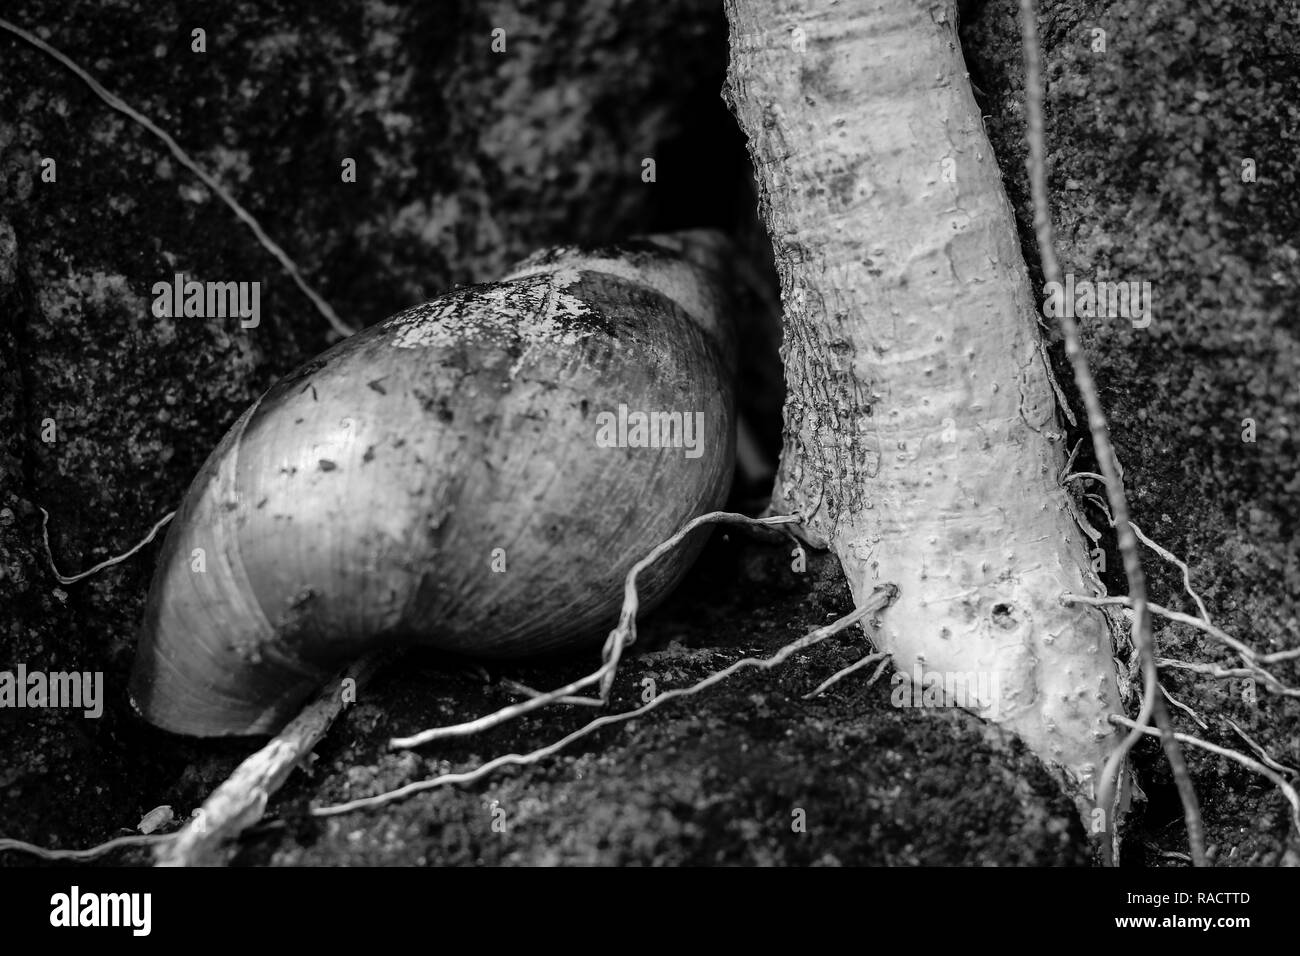 Dead coquille d'escargot se trouve à côté d'une racine de l'arbre exposée Banque D'Images